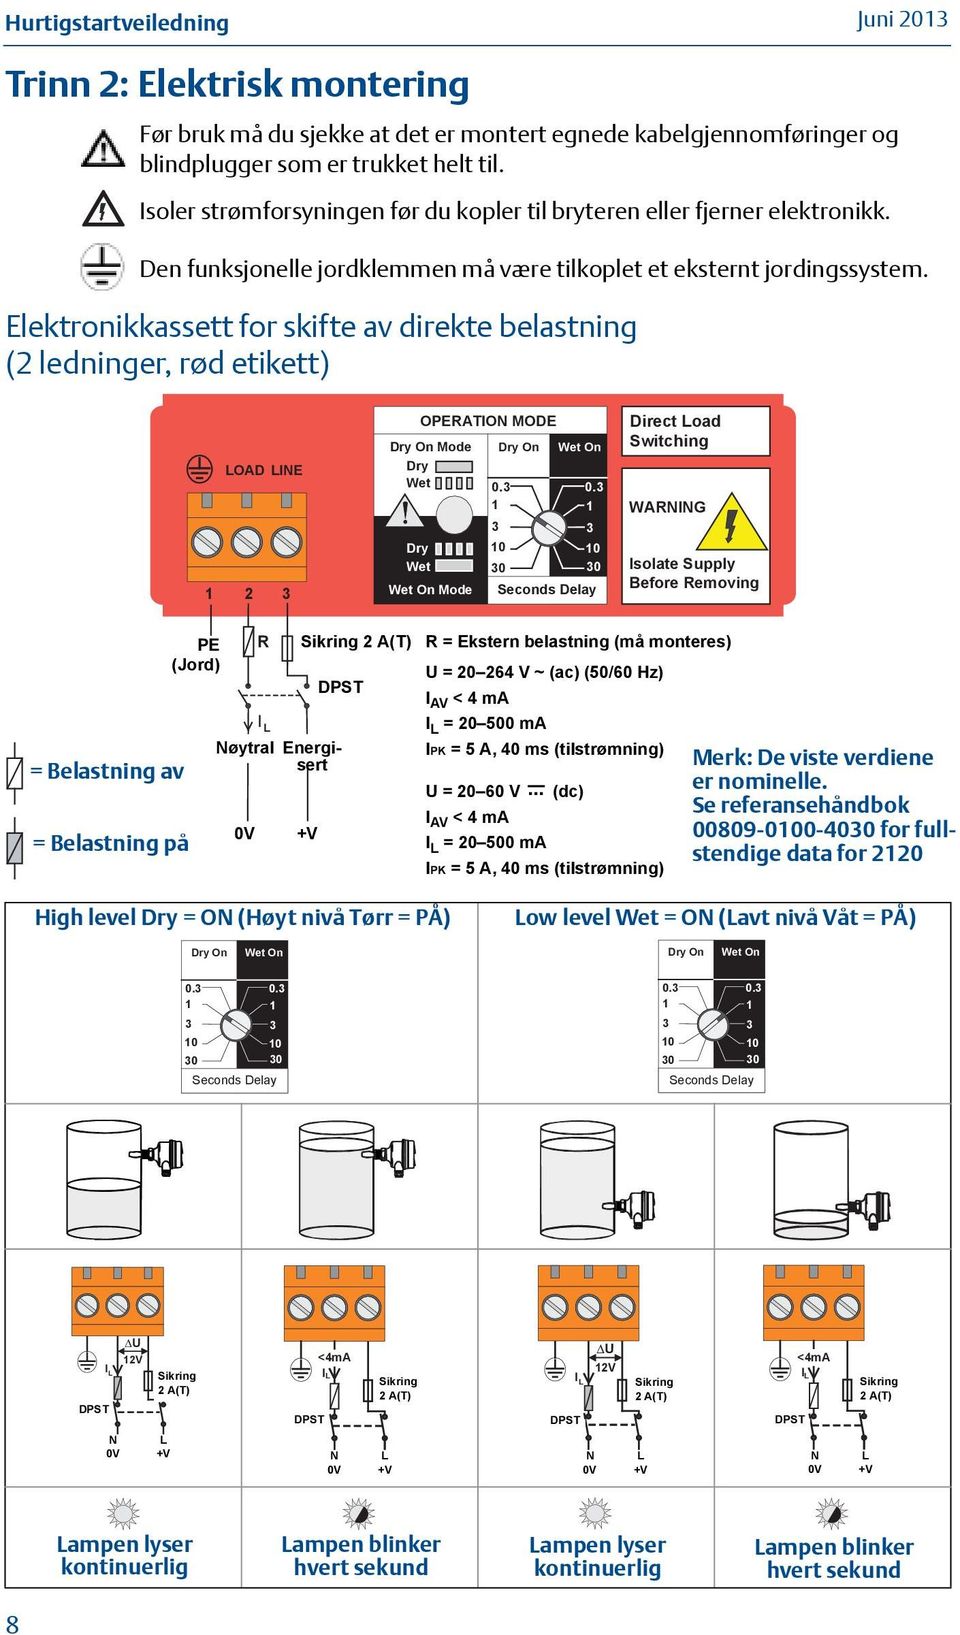 Elektronikkassett for skifte av direkte belastning (2 ledninger, rød etikett) LOAD LINE 2 OPERATION MODE Dry On Mode Dry Wet Dry On 0. Wet On 0.